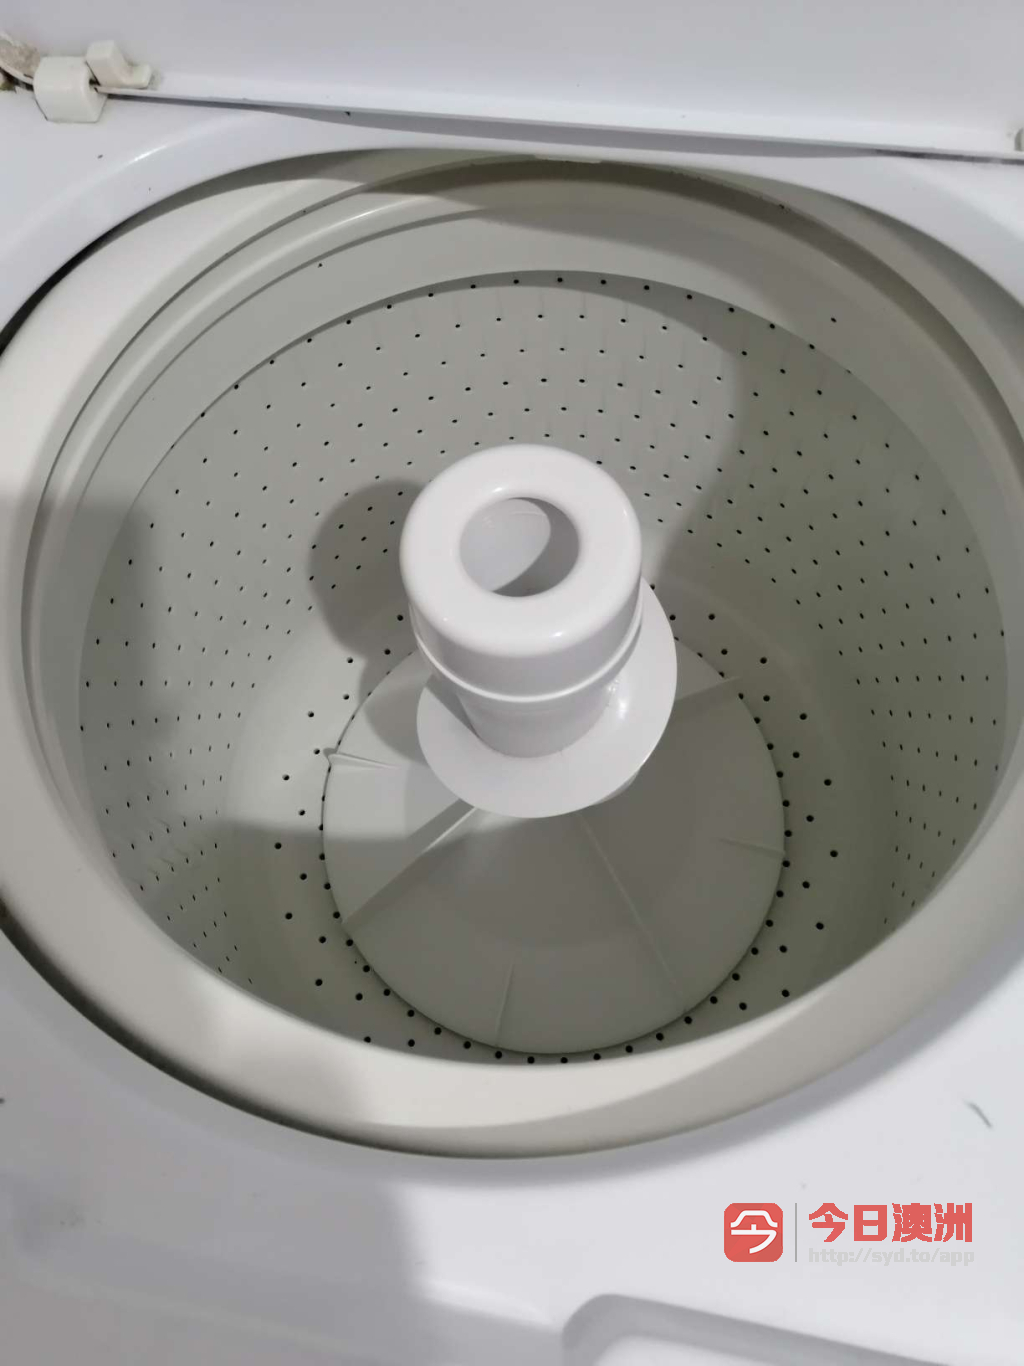 坚固整洁大容量洗衣机急售